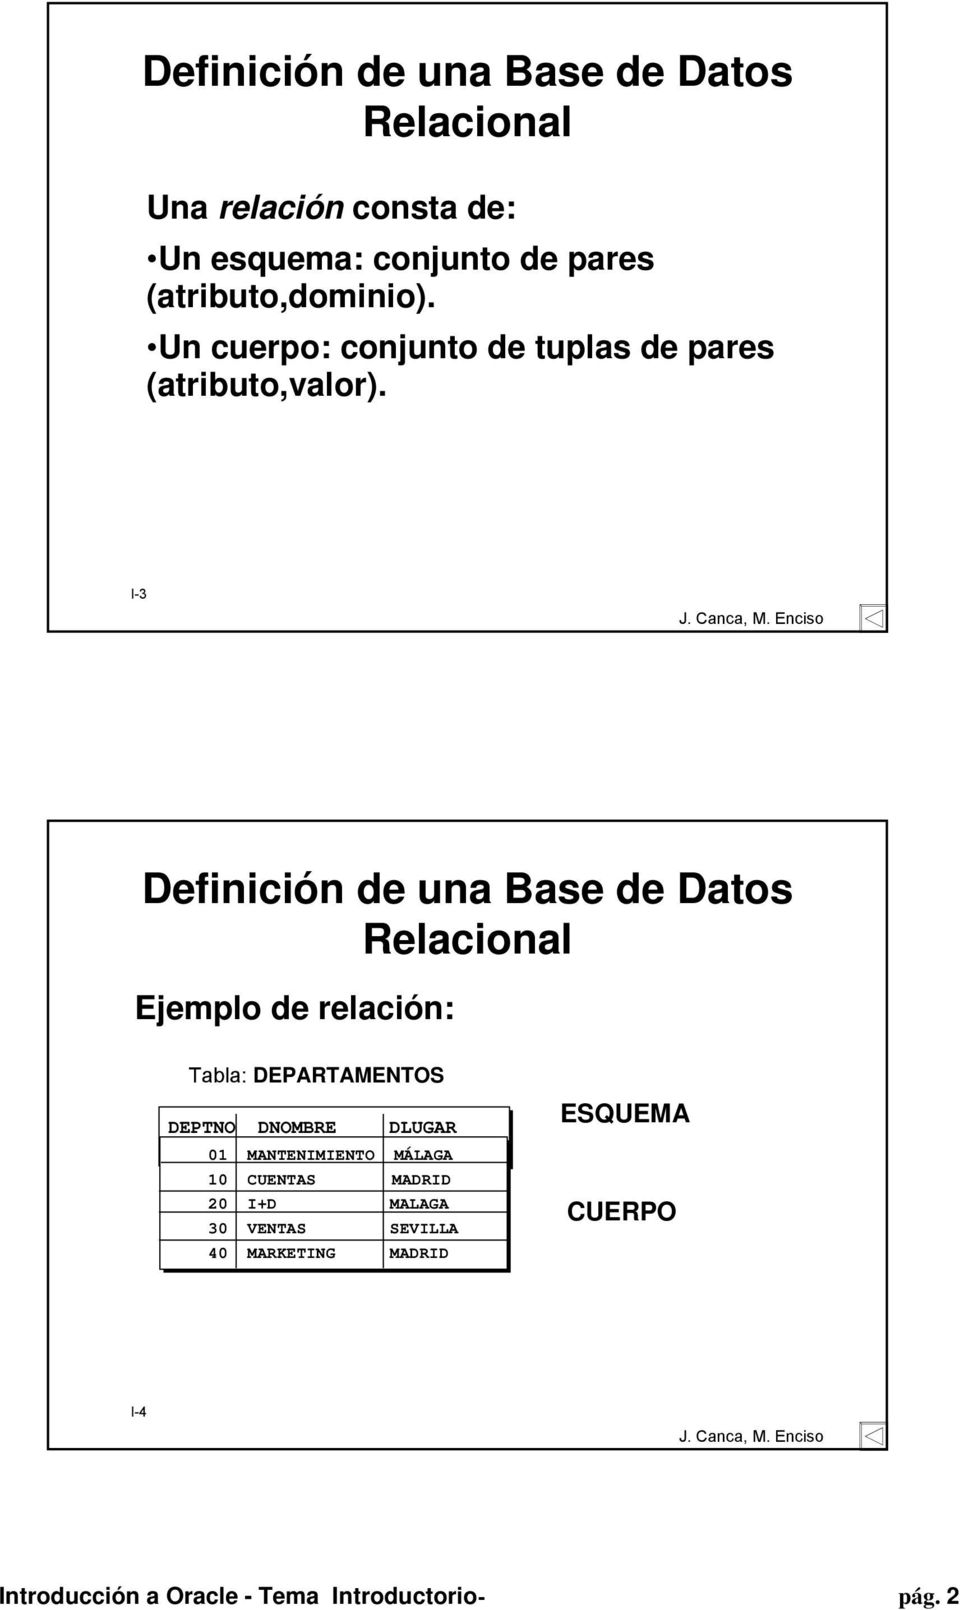 I-3 Definición de una Base de Datos Relacional Ejemplo de relación: Tabla: DEPARTAMENTOS DEPTNO DNOMBRE DLUGAR